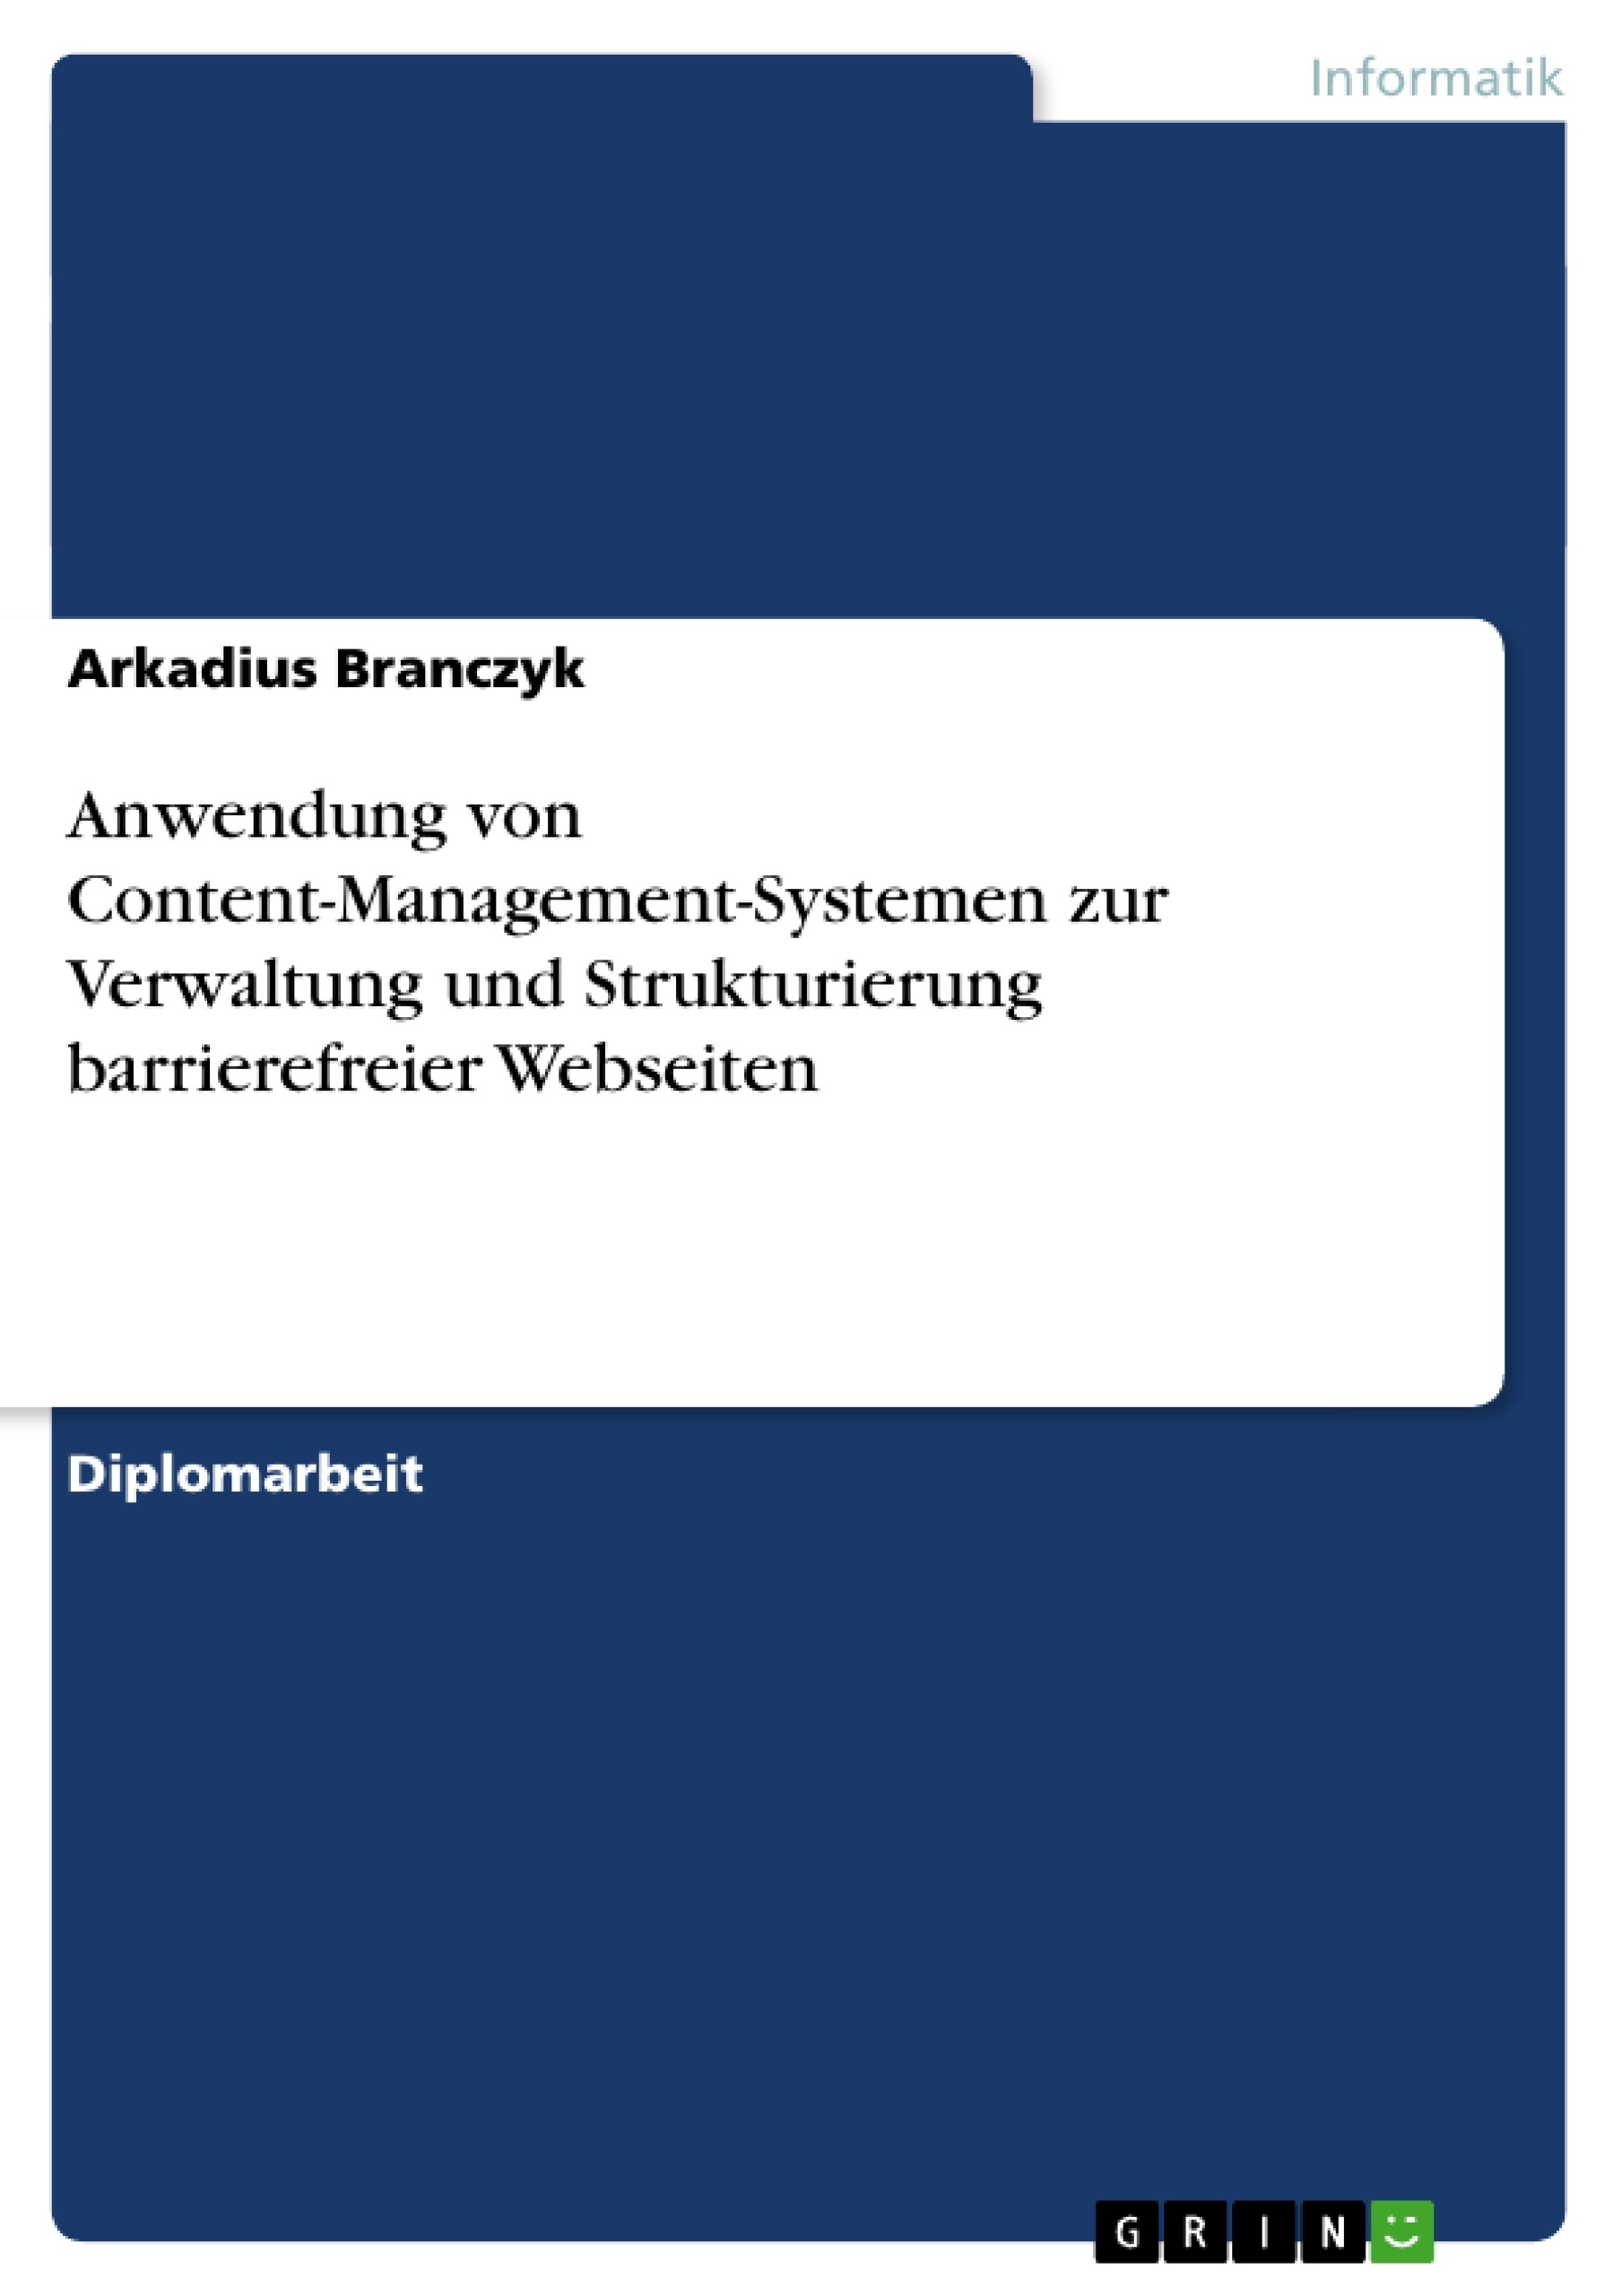 Title: Anwendung von Content-Management-Systemen zur Verwaltung und Strukturierung barrierefreier Webseiten